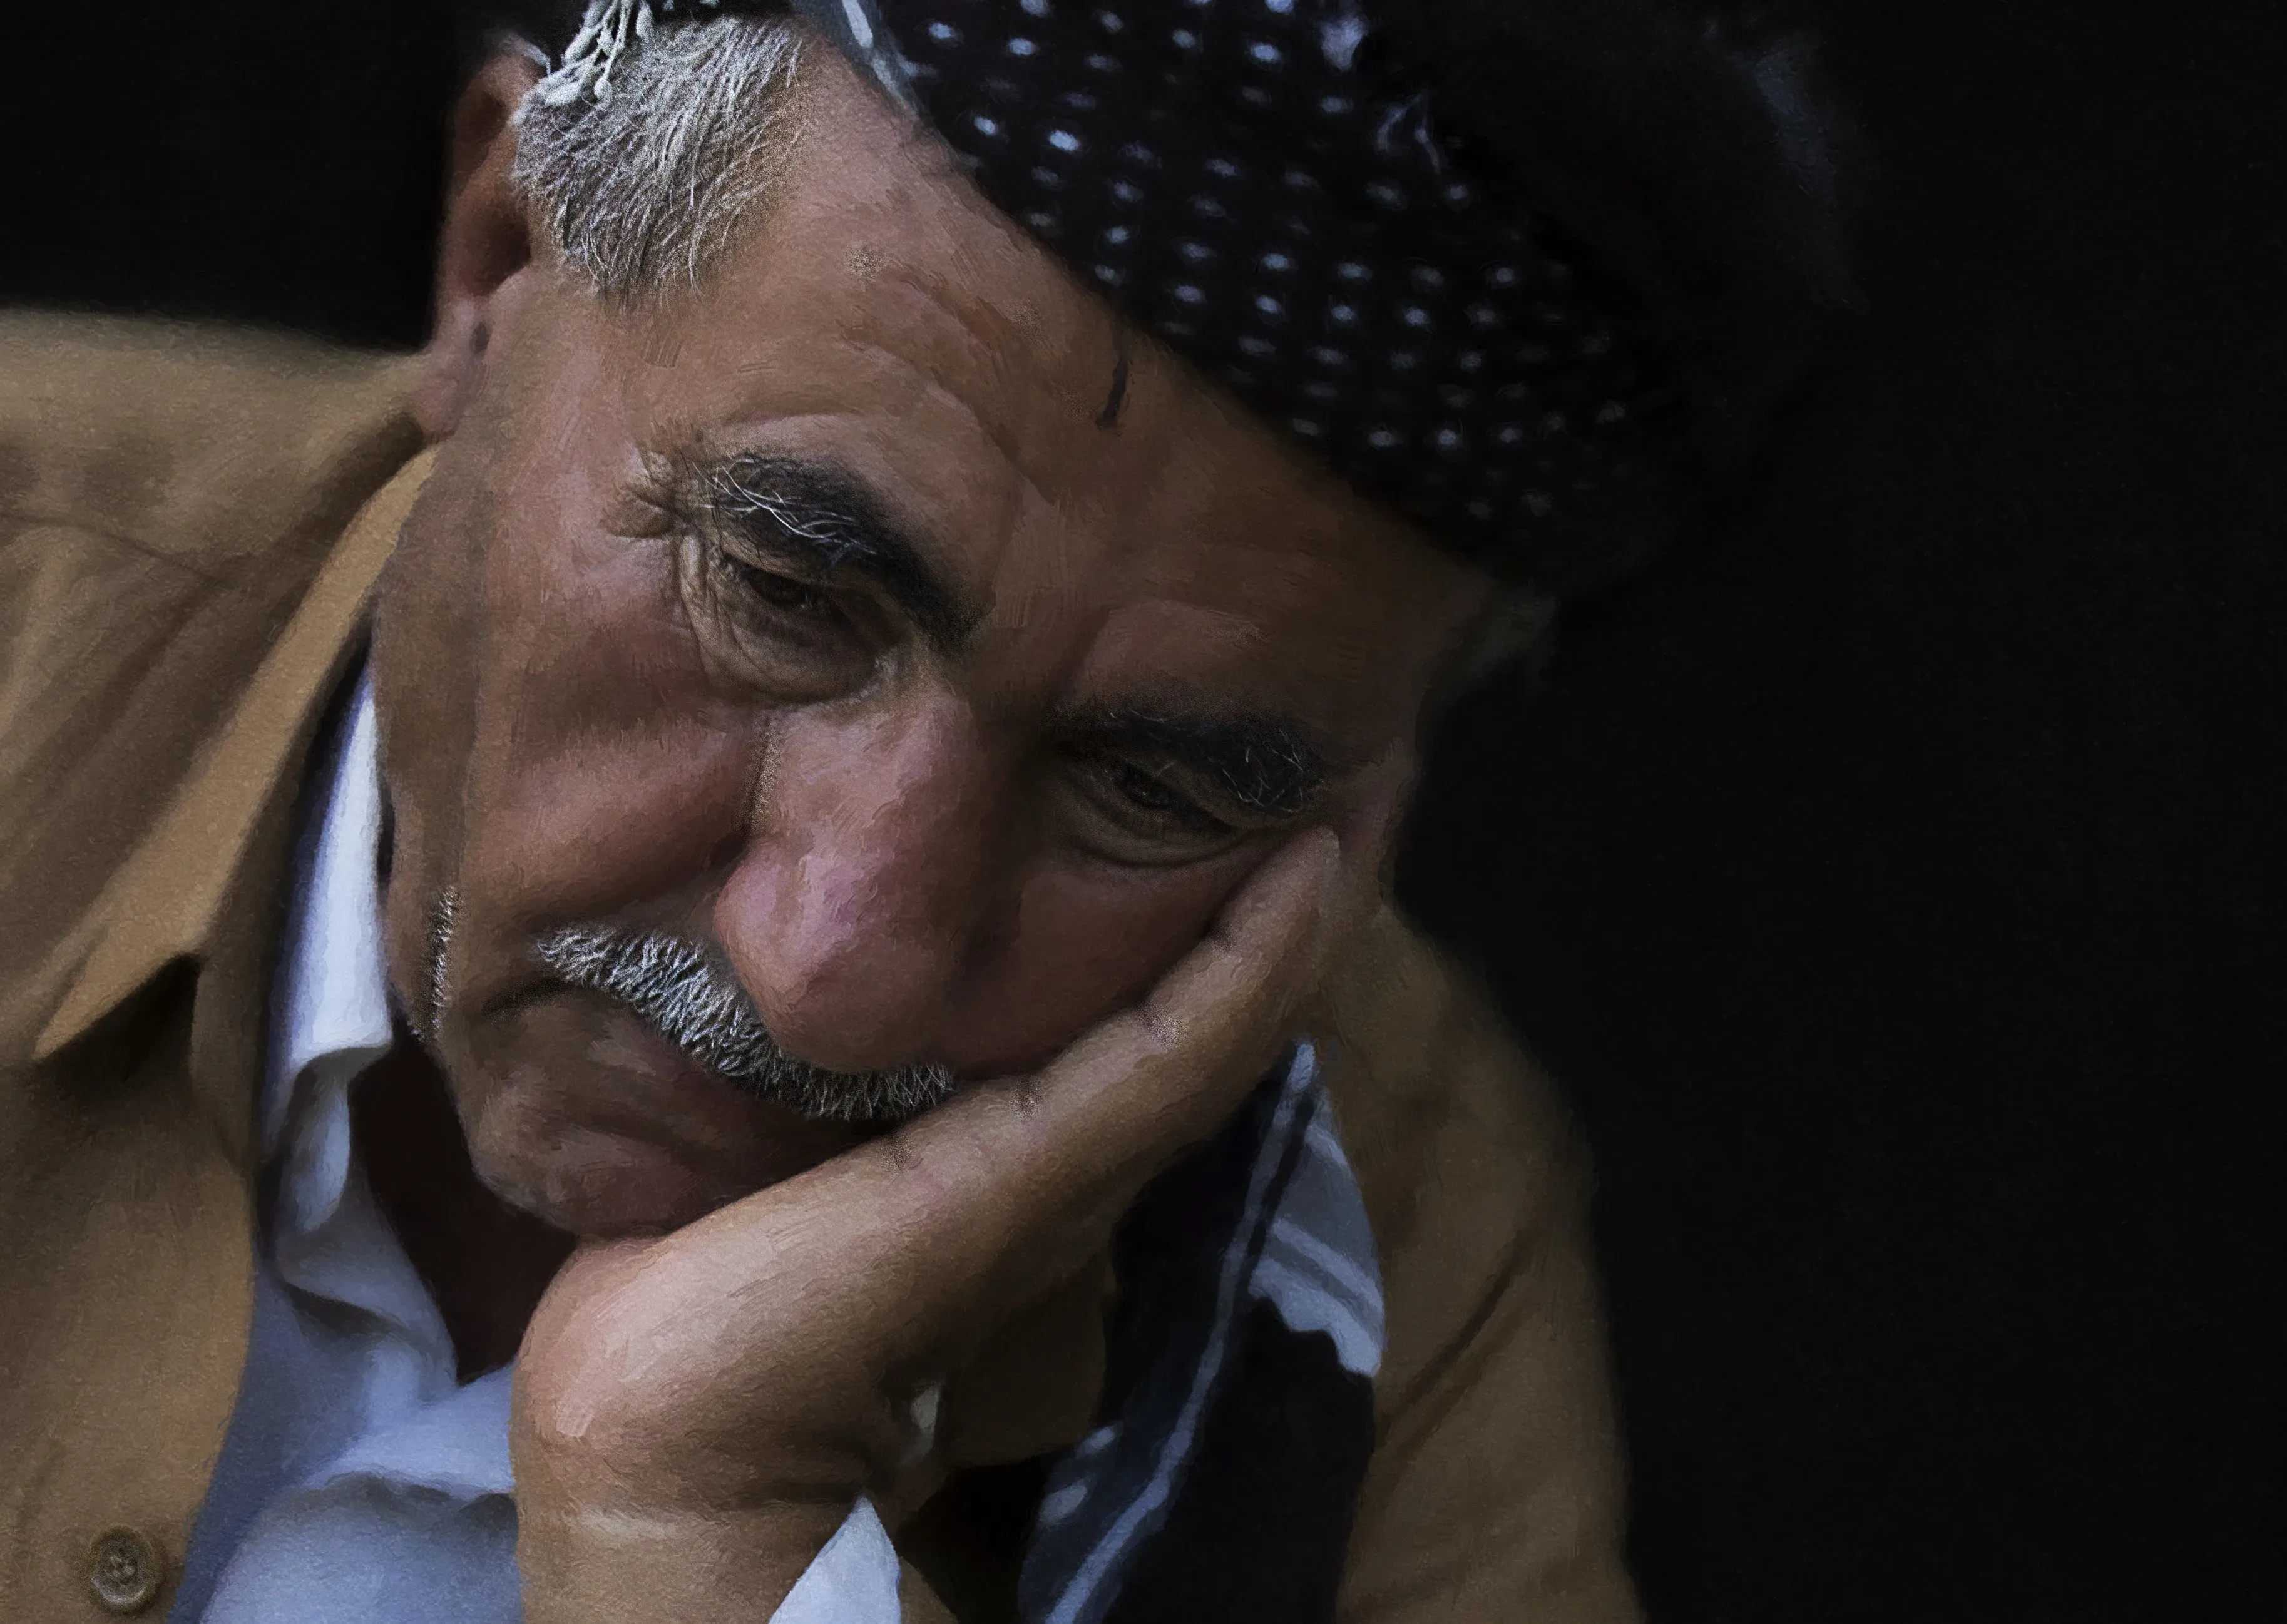 Prostonic : Türkiye'de eczaneden nereden alınır?